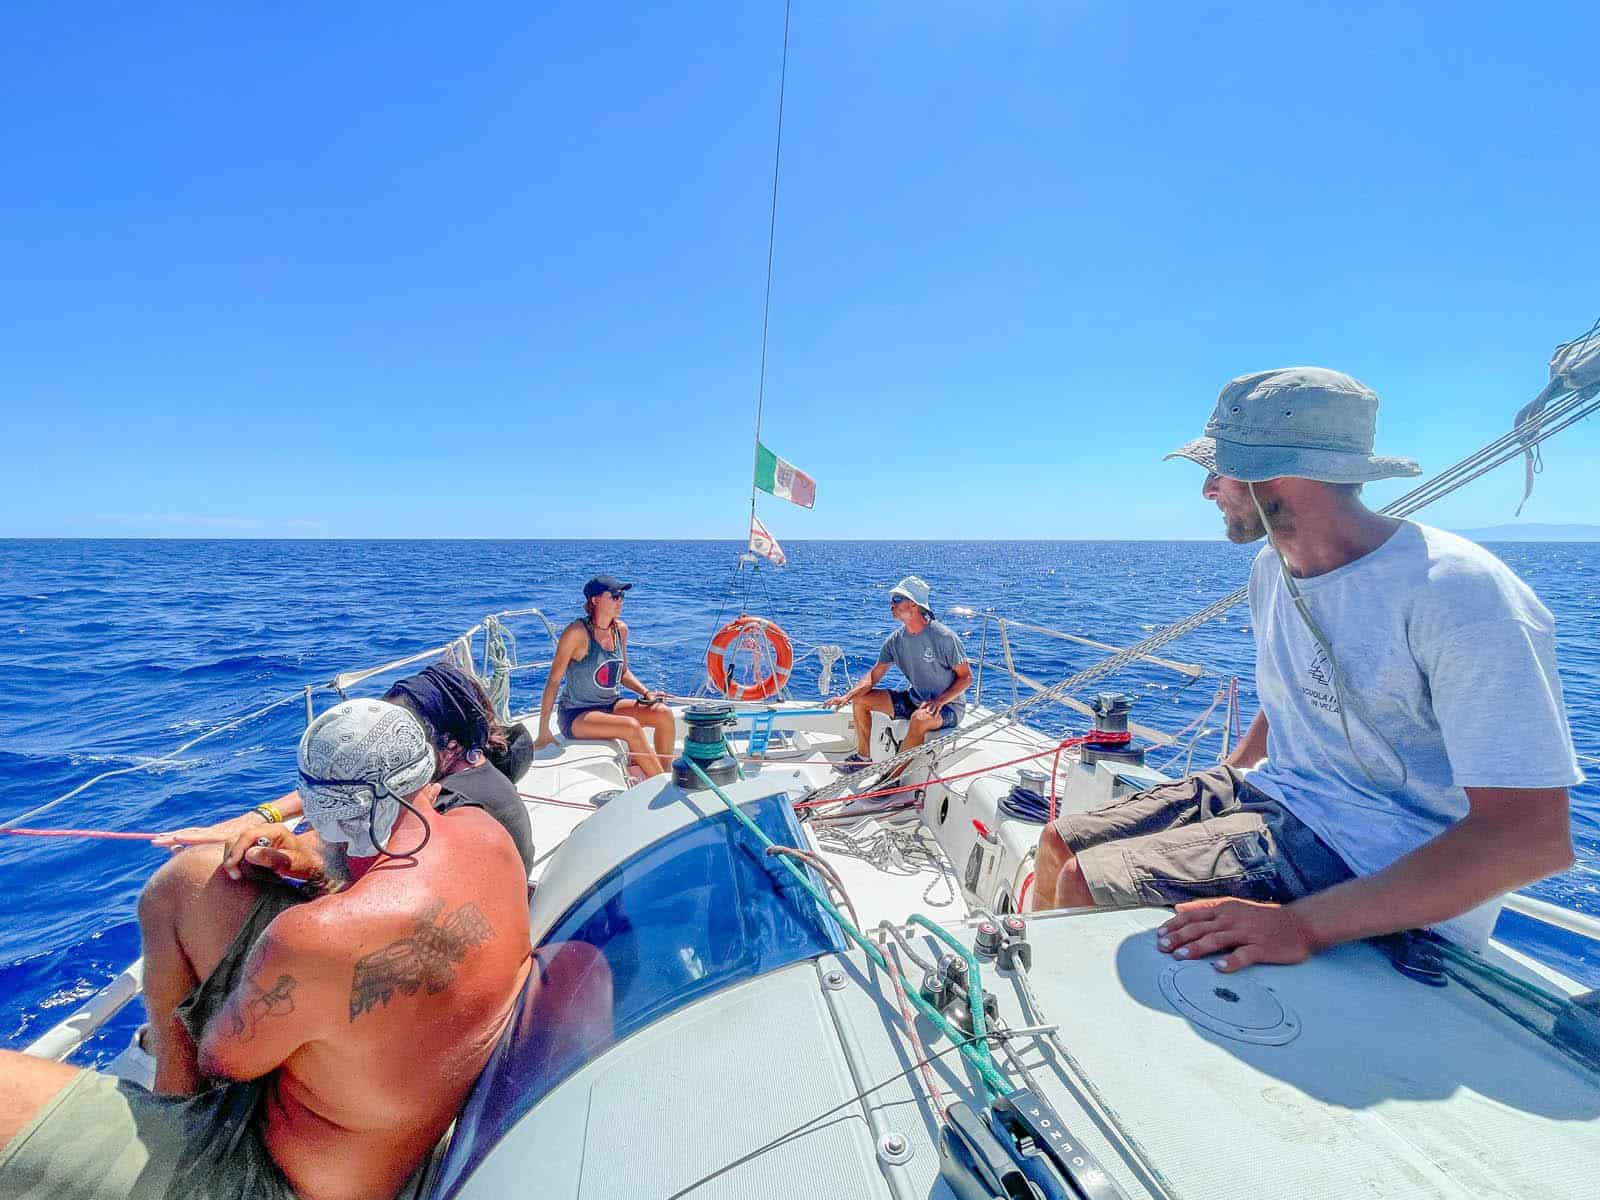 Gruppo di giovani partecipanti su una barca a vela durante un corso intensivo estivo in Sardegna.